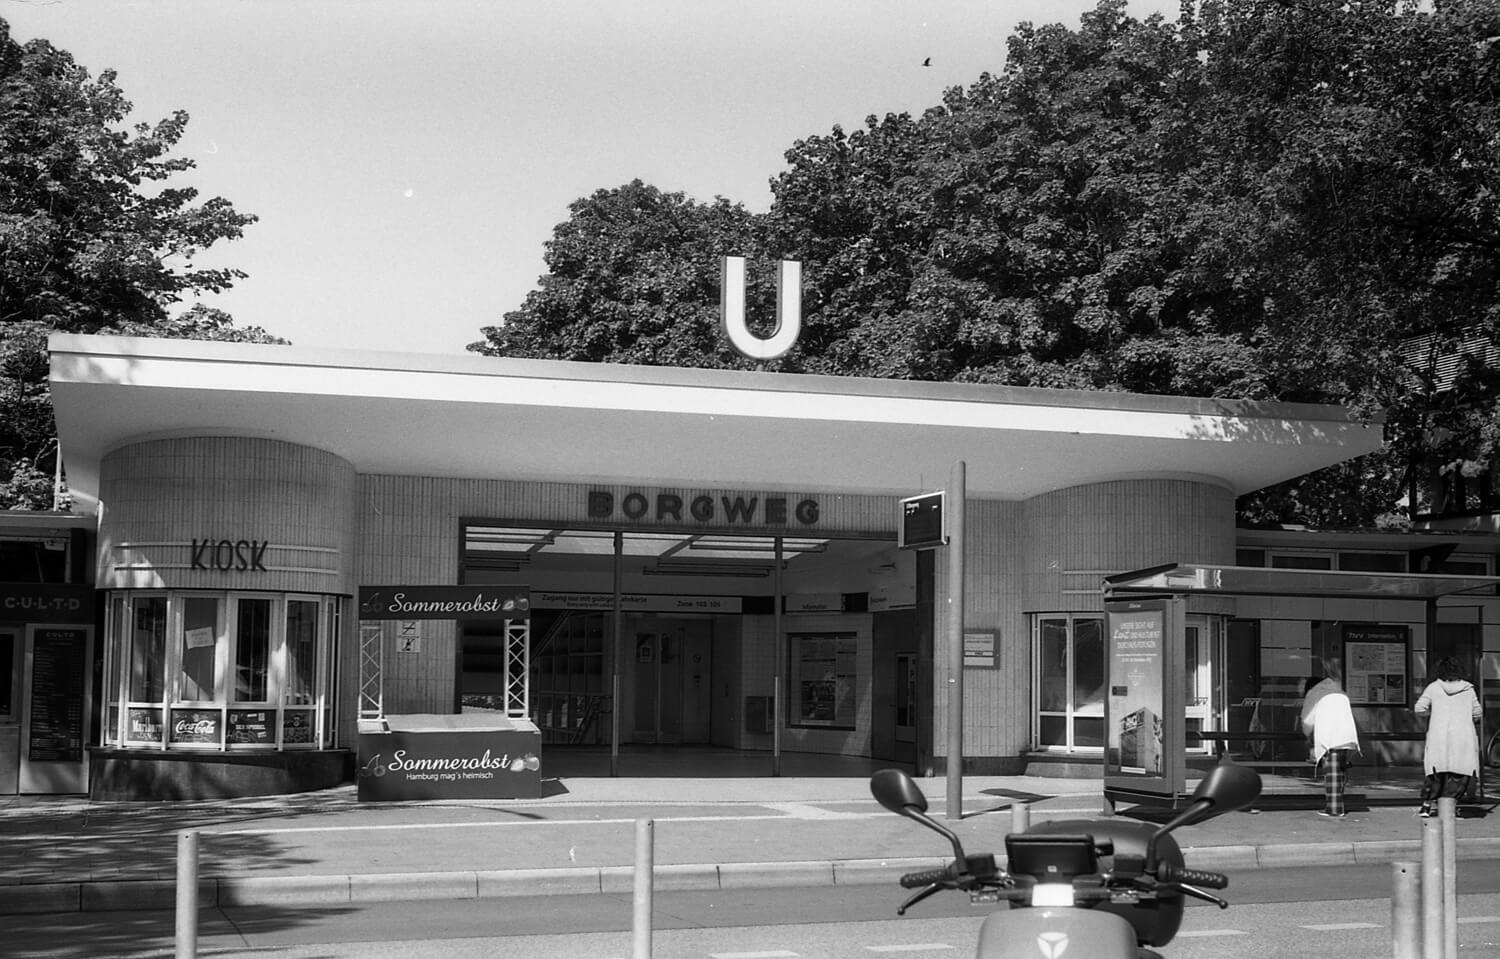 Borweg U-bahn station. 50mm, f2.8 Beroflex. f8, 1/125s